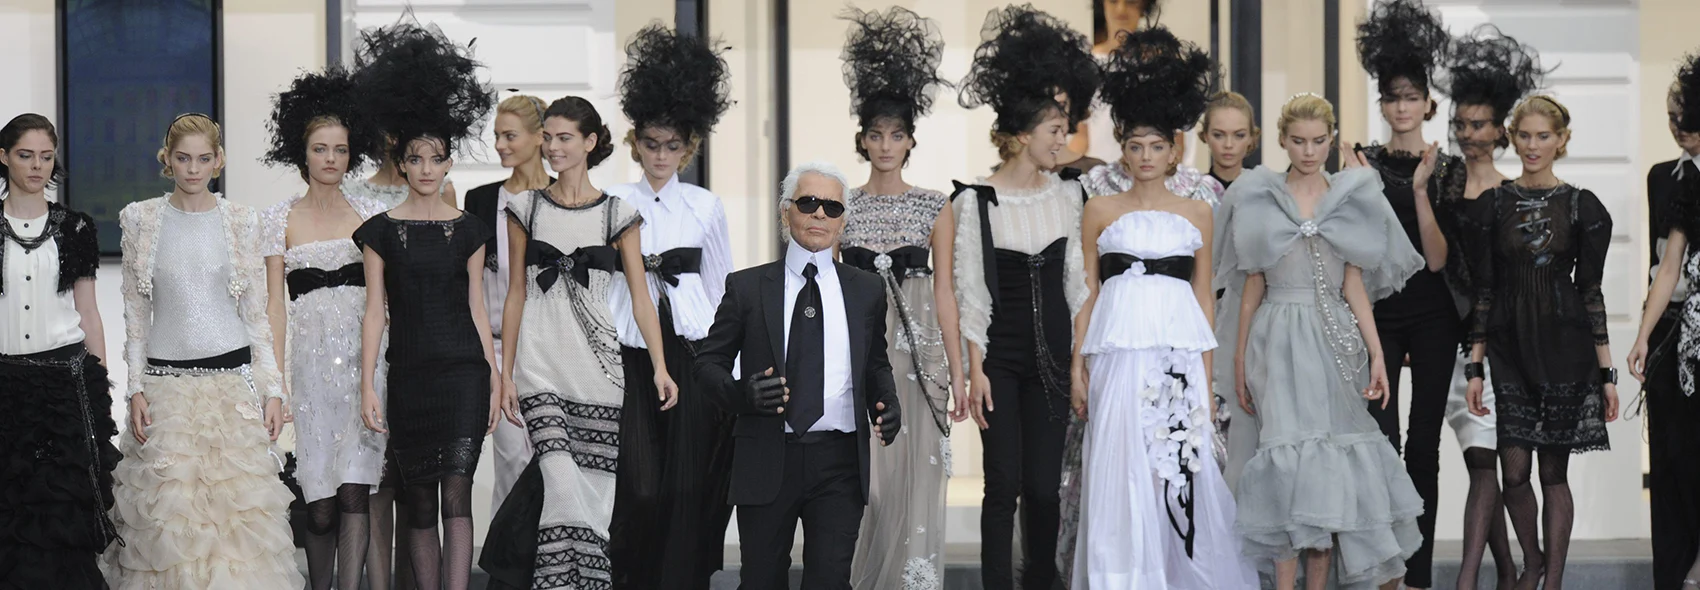 Karl Lagerfeld: Die Legende hinter Chanel